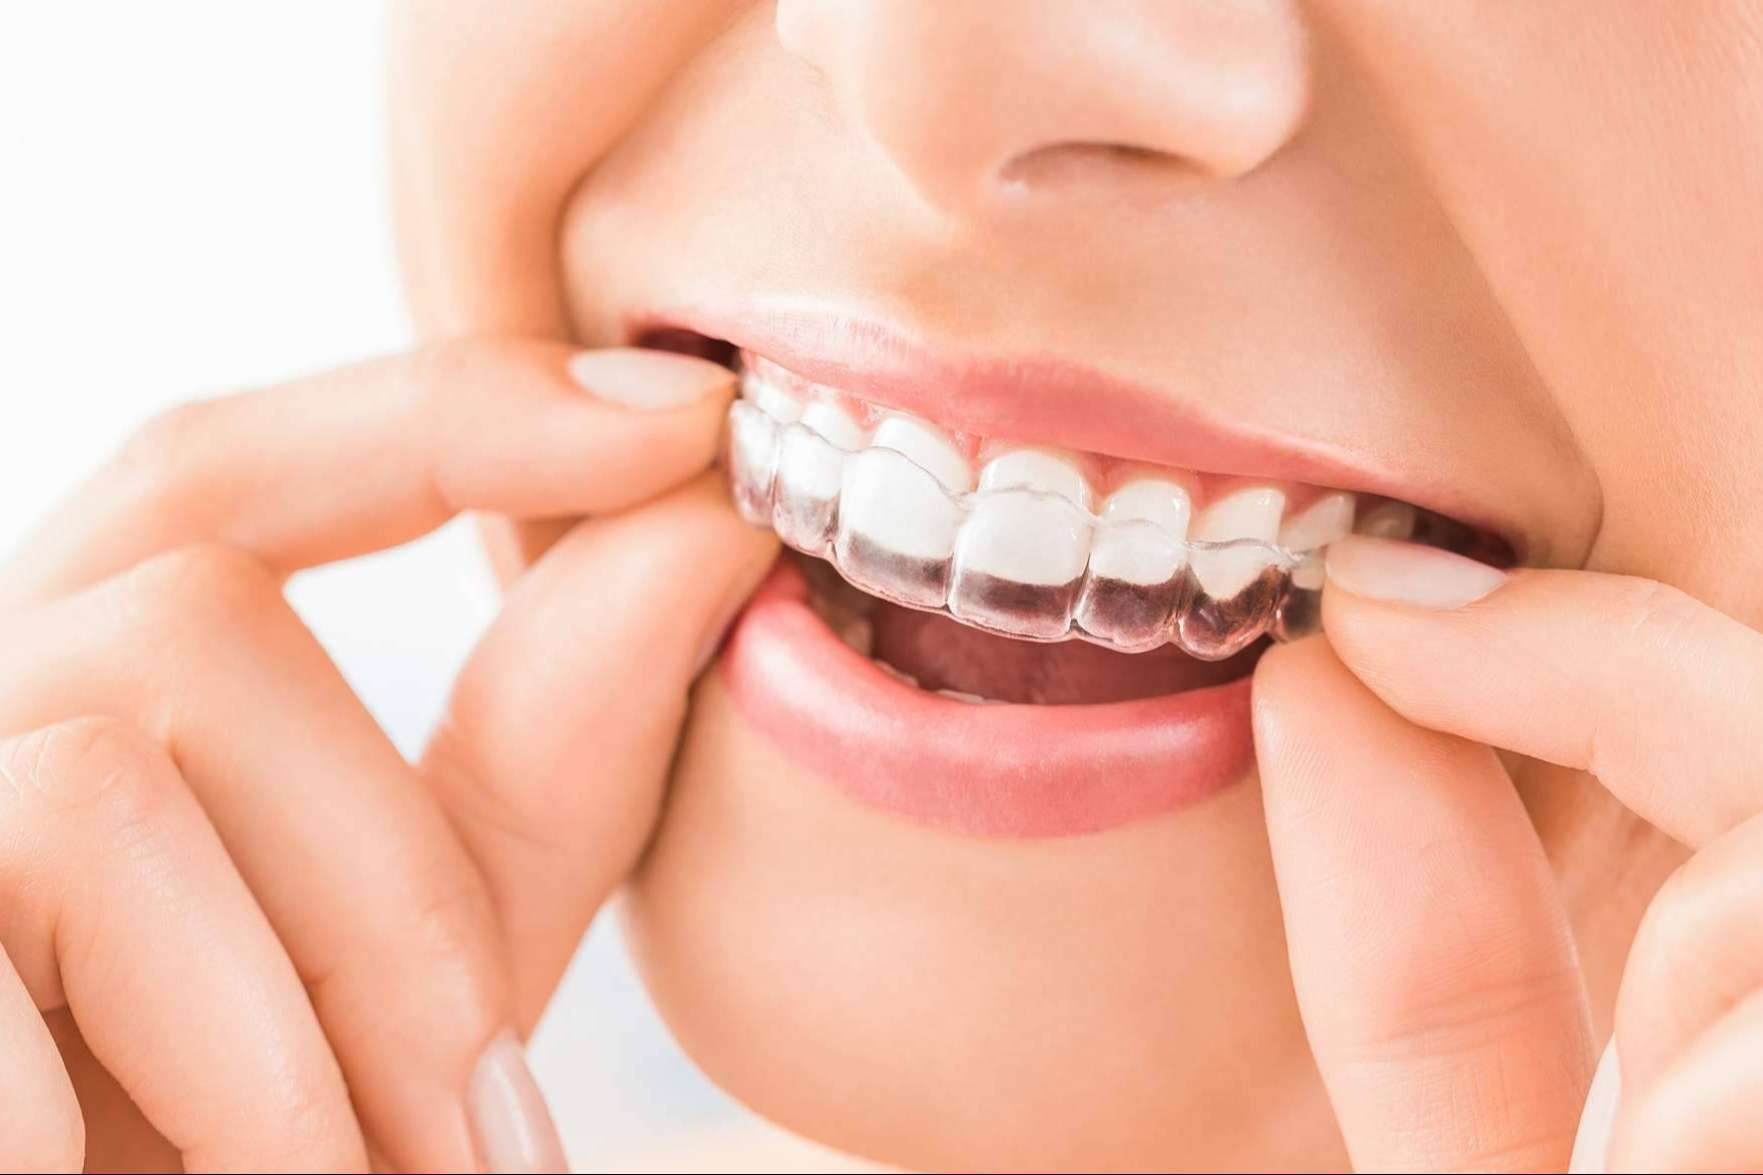  Ortodoncia 3D y blanqueamiento gratis, solo el 23 de mayo en Clínicas Nobel 